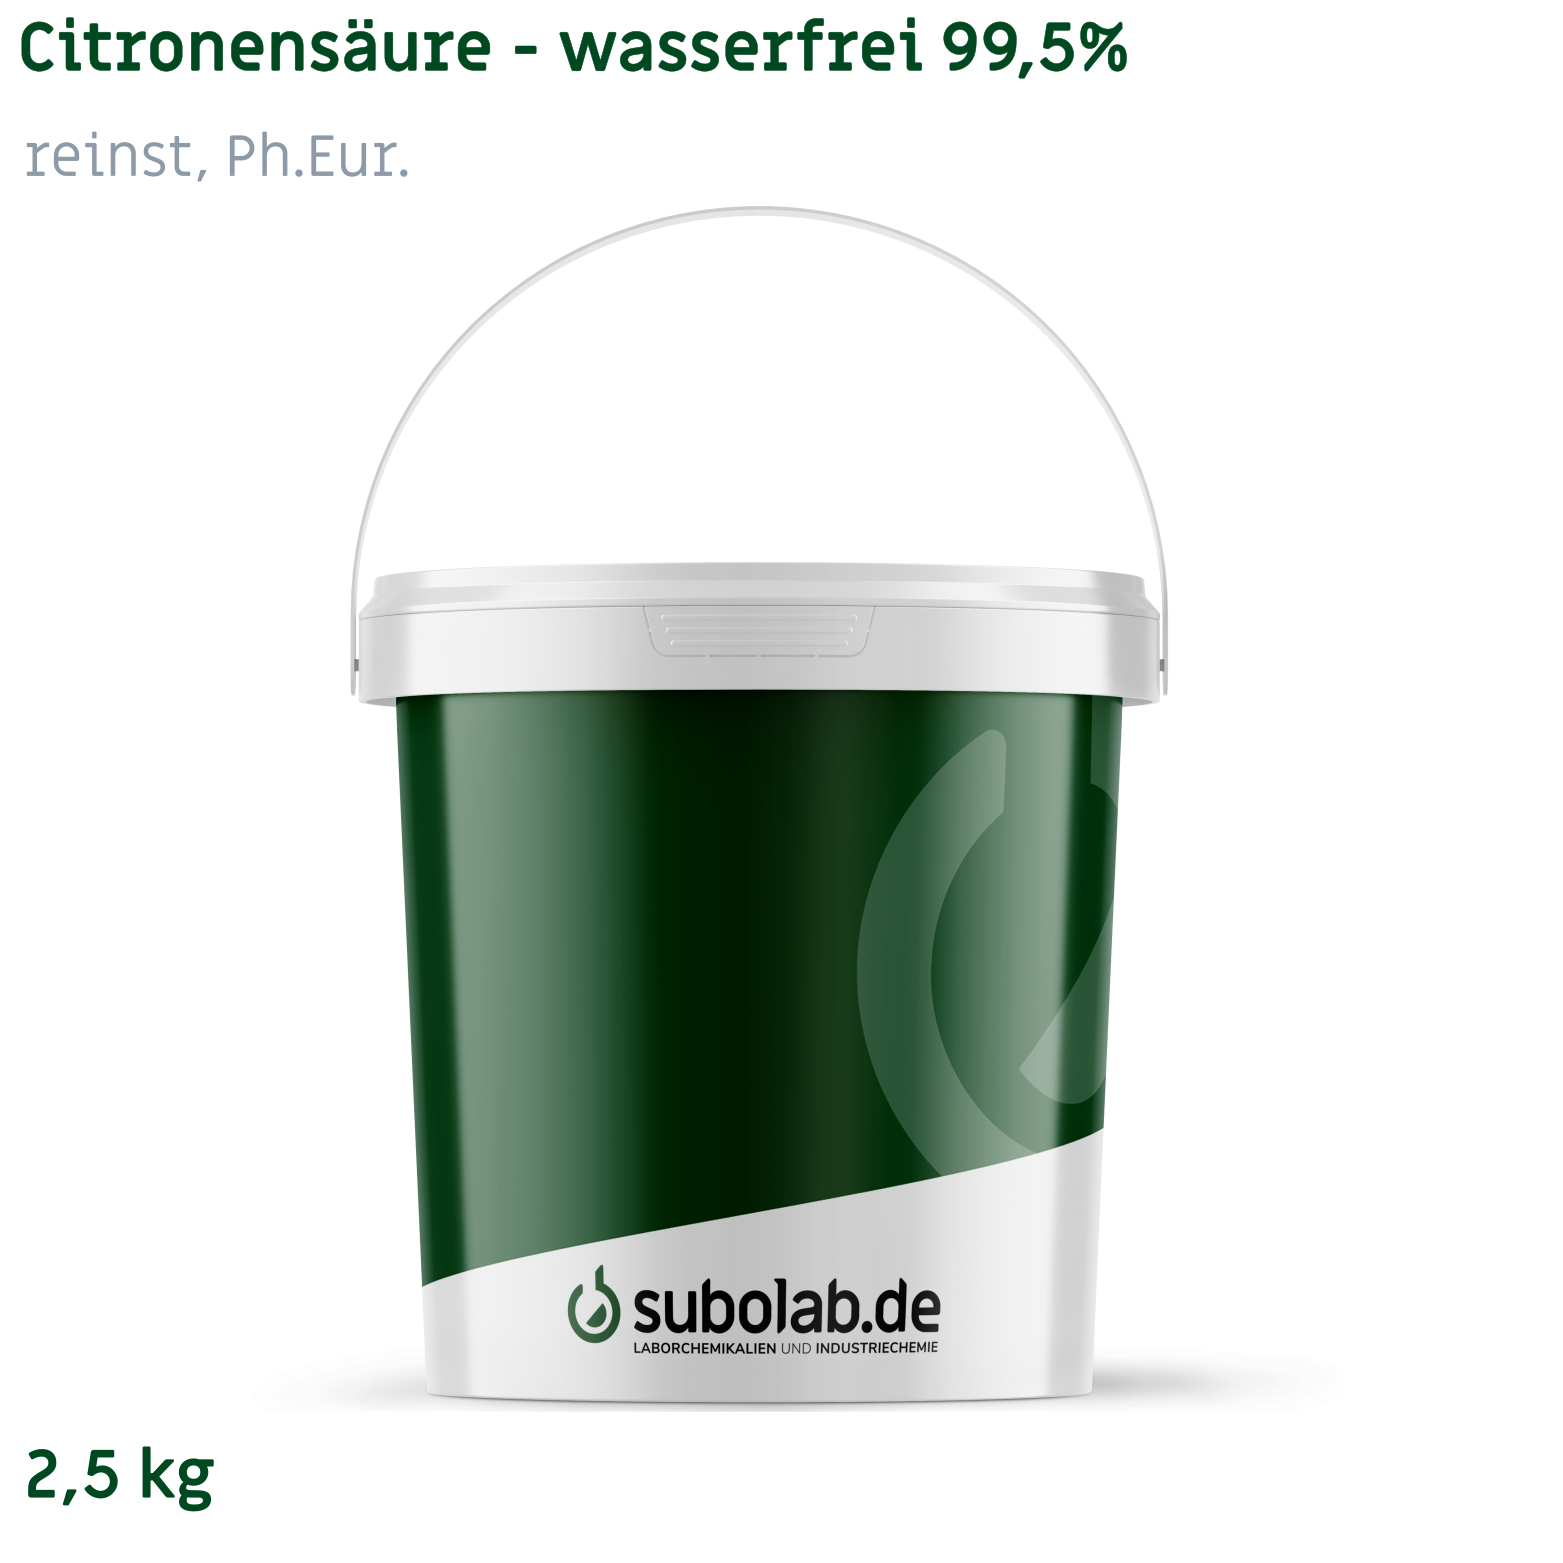 Bild von Citronensäure - wasserfrei 99,5% reinst, Ph.Eur. (2,5 kg)